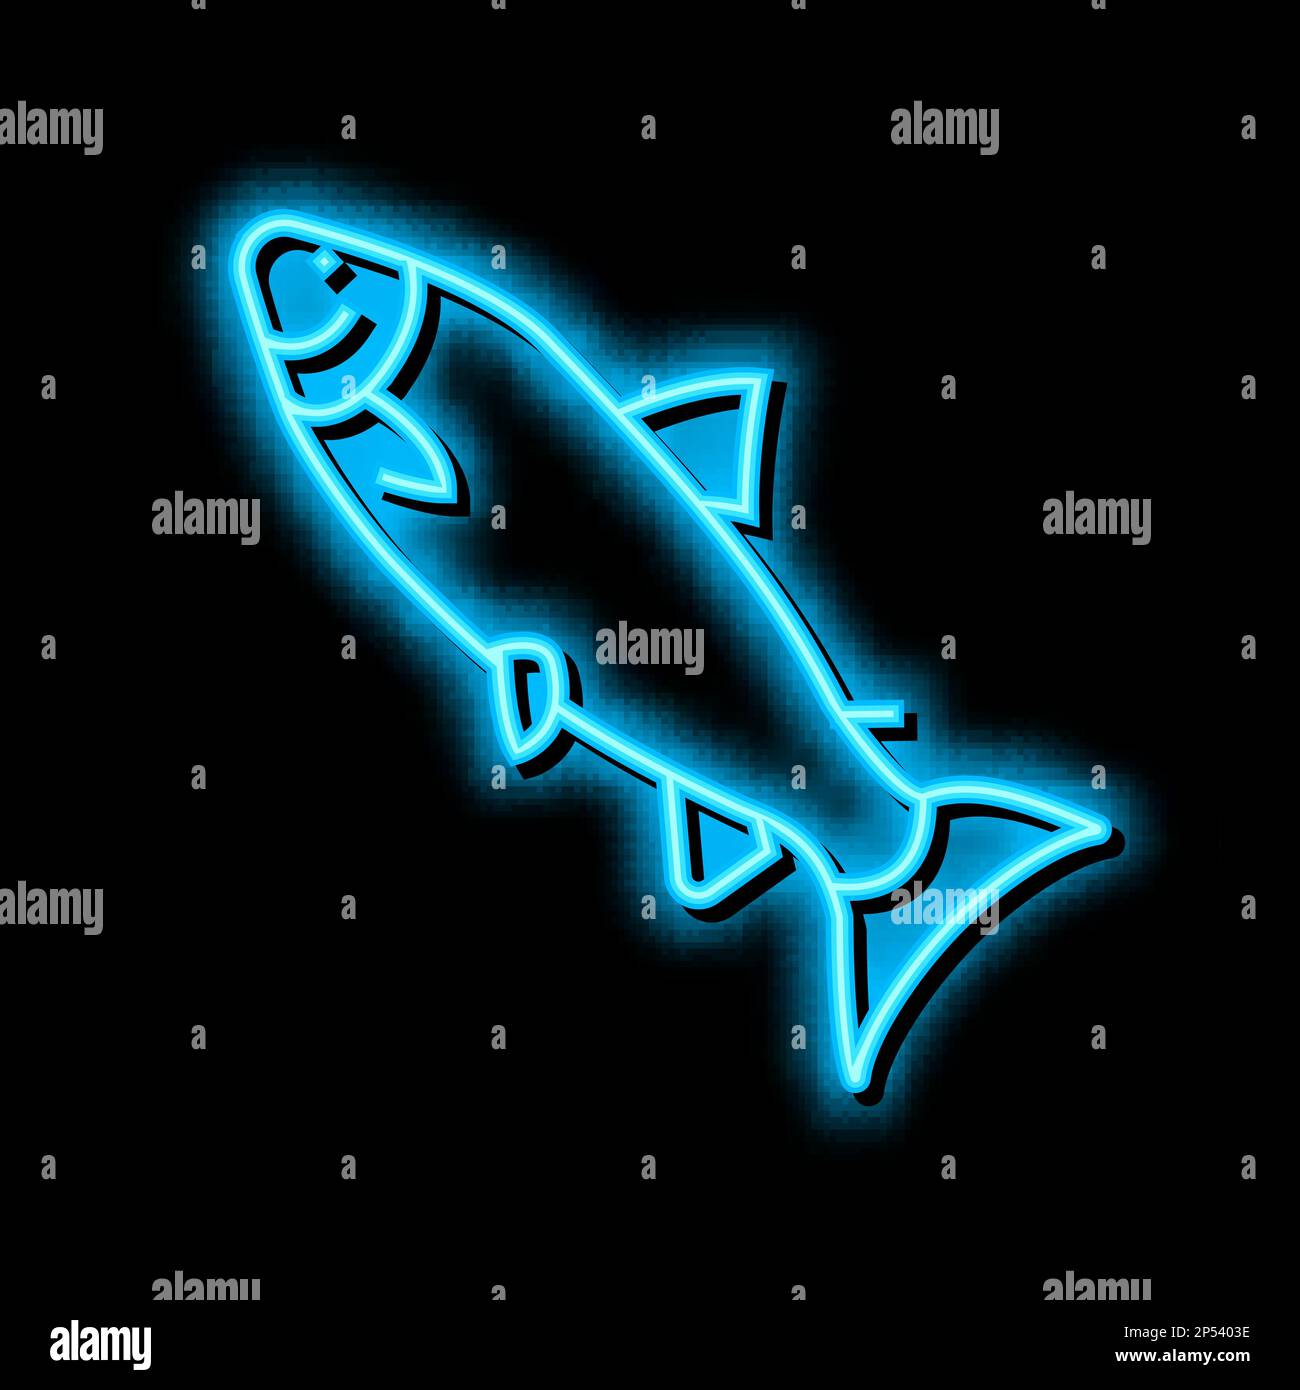 Illustration des glanzsymbols für atlantischen Lachs in Neonfarben Stock Vektor